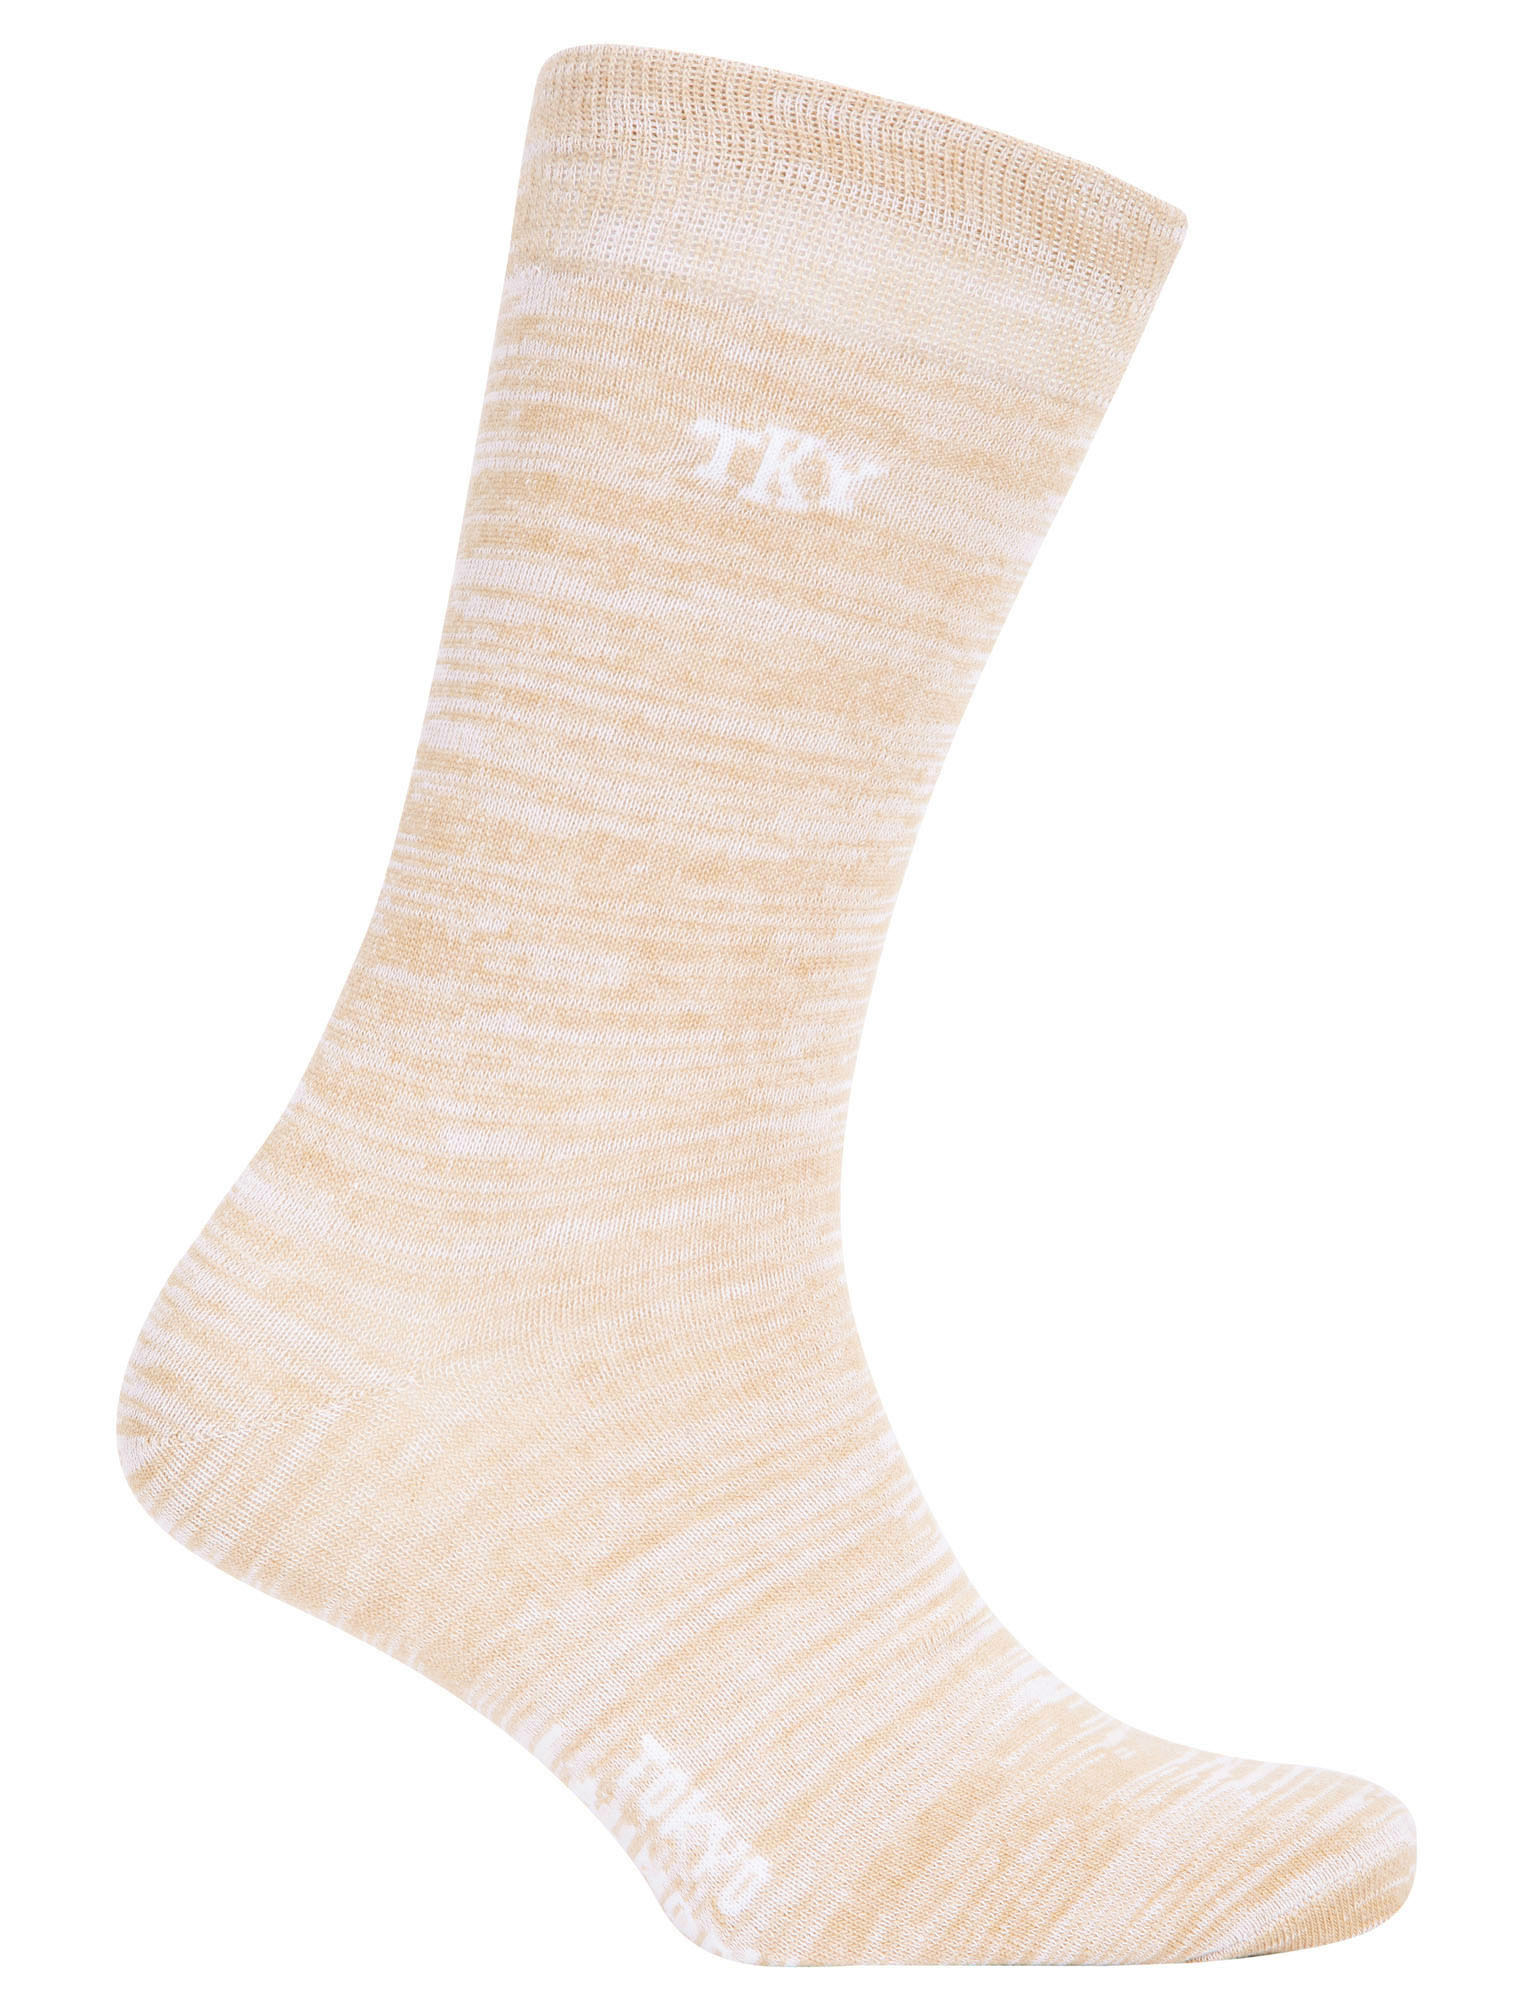 Men/'s Tokyo Laundry Socks 5 Pack Cotton Rich Multi-Pack Calf Length Stripe Plain